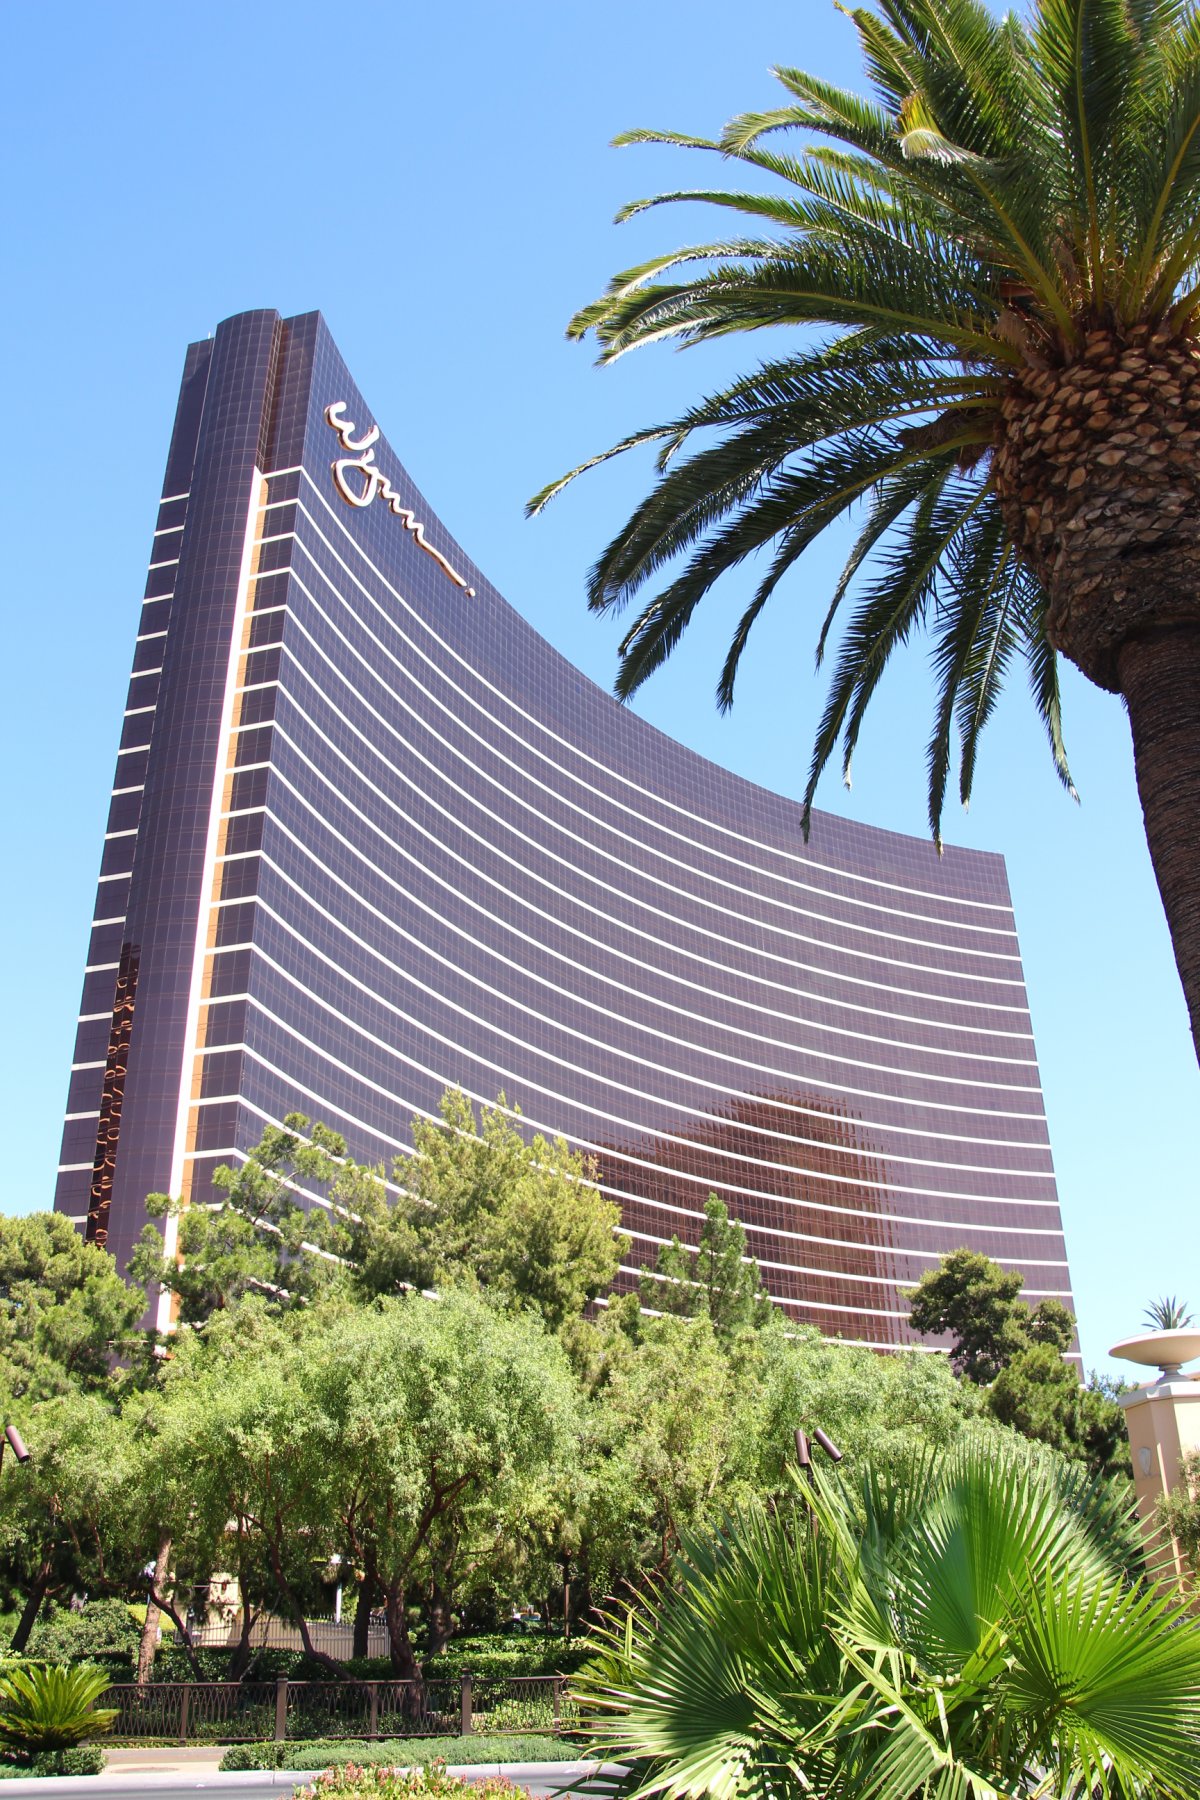 
Được xây dựng năm 2005, khu sòng bài và nghỉ dưỡng Wynn ở Las Vegas có giá 4,1 tỷ USD. Công trình này cao 187 m.
